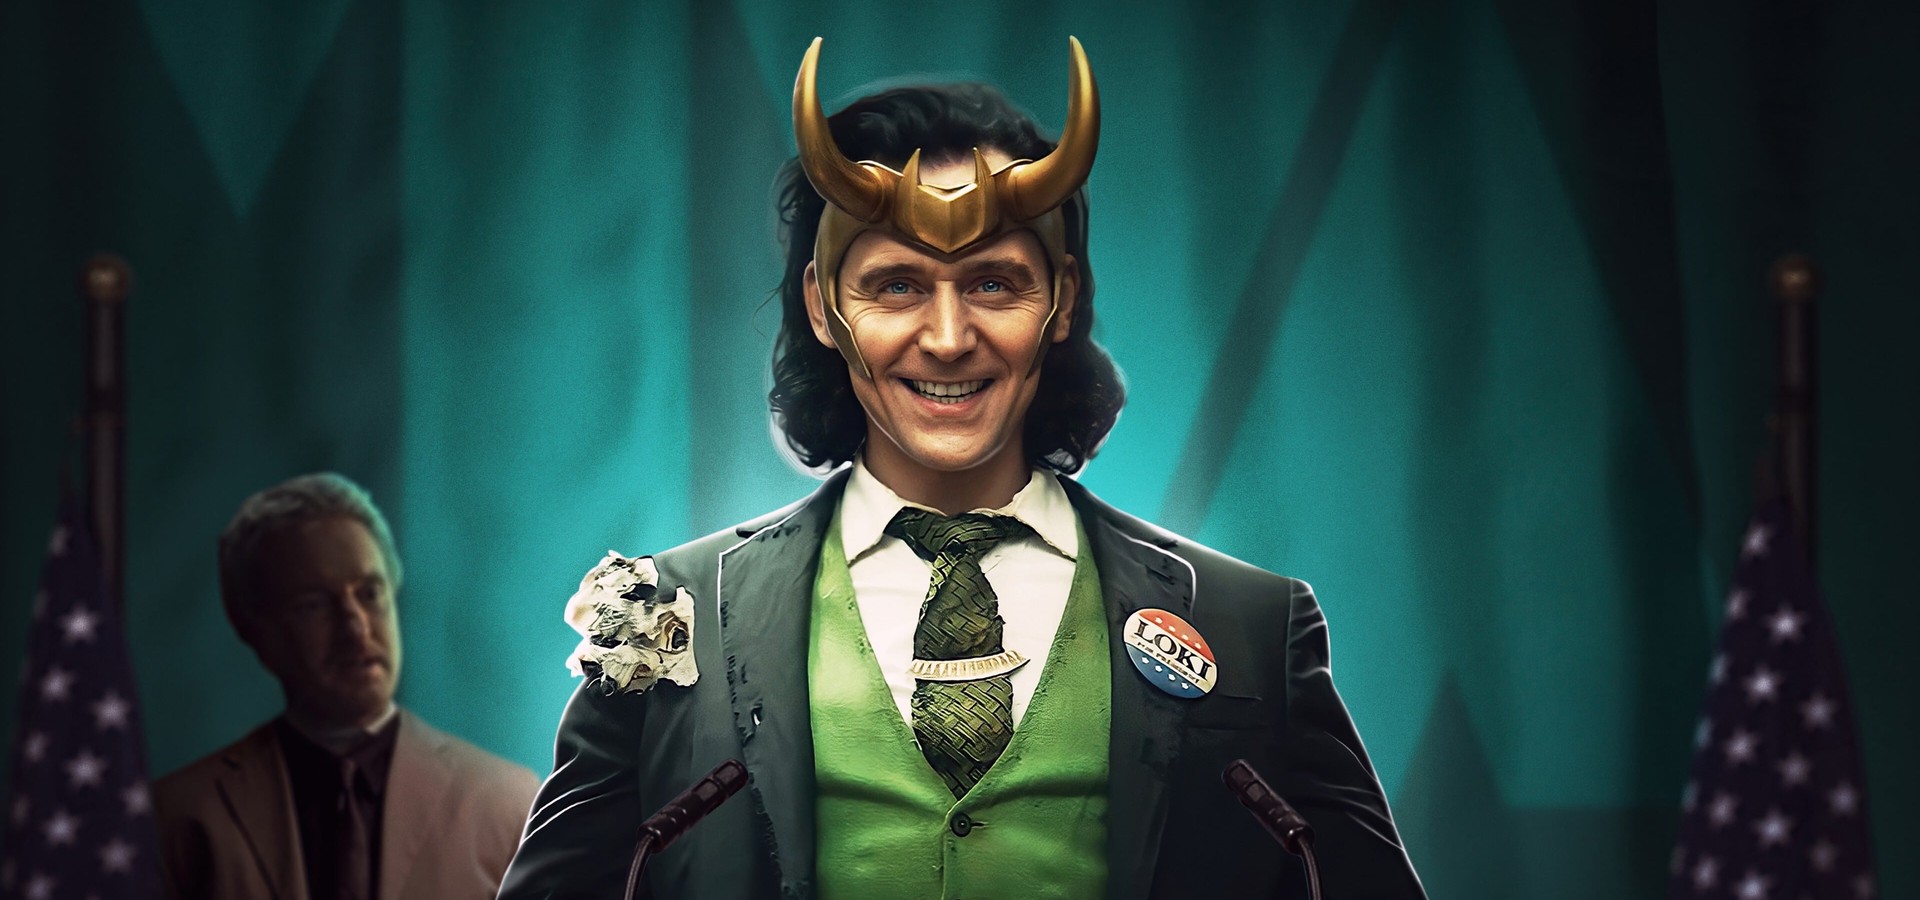 Loki, 2ª temporada: trailer inédito apresenta novos personagens - Purebreak